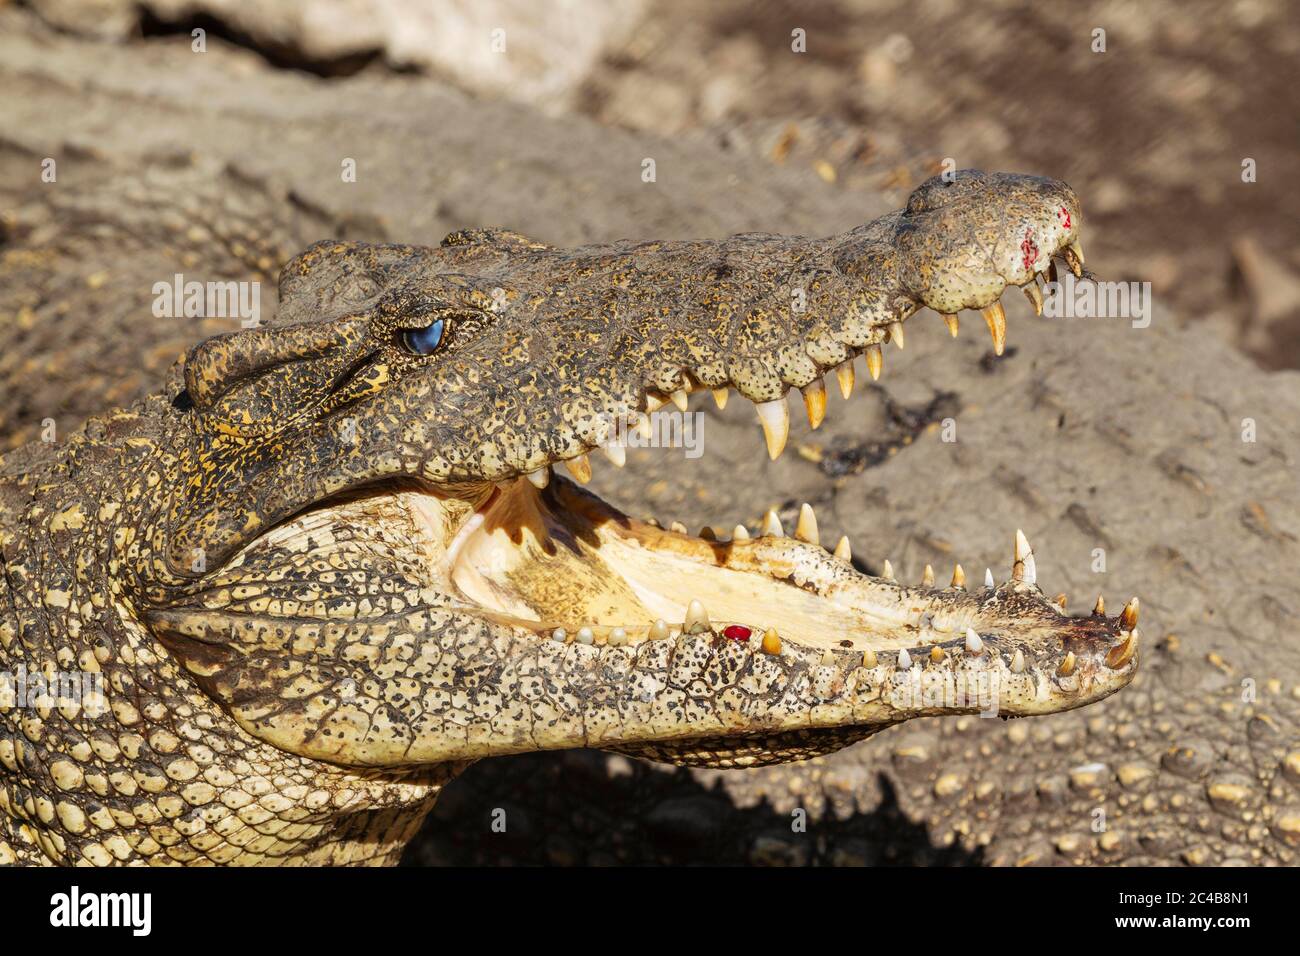 Crocodile cubain (Crocodylus rhombifer), en danger critique, captif dans une ferme de reproduction de crocodiles, péninsule de Zapata, Cuba Banque D'Images